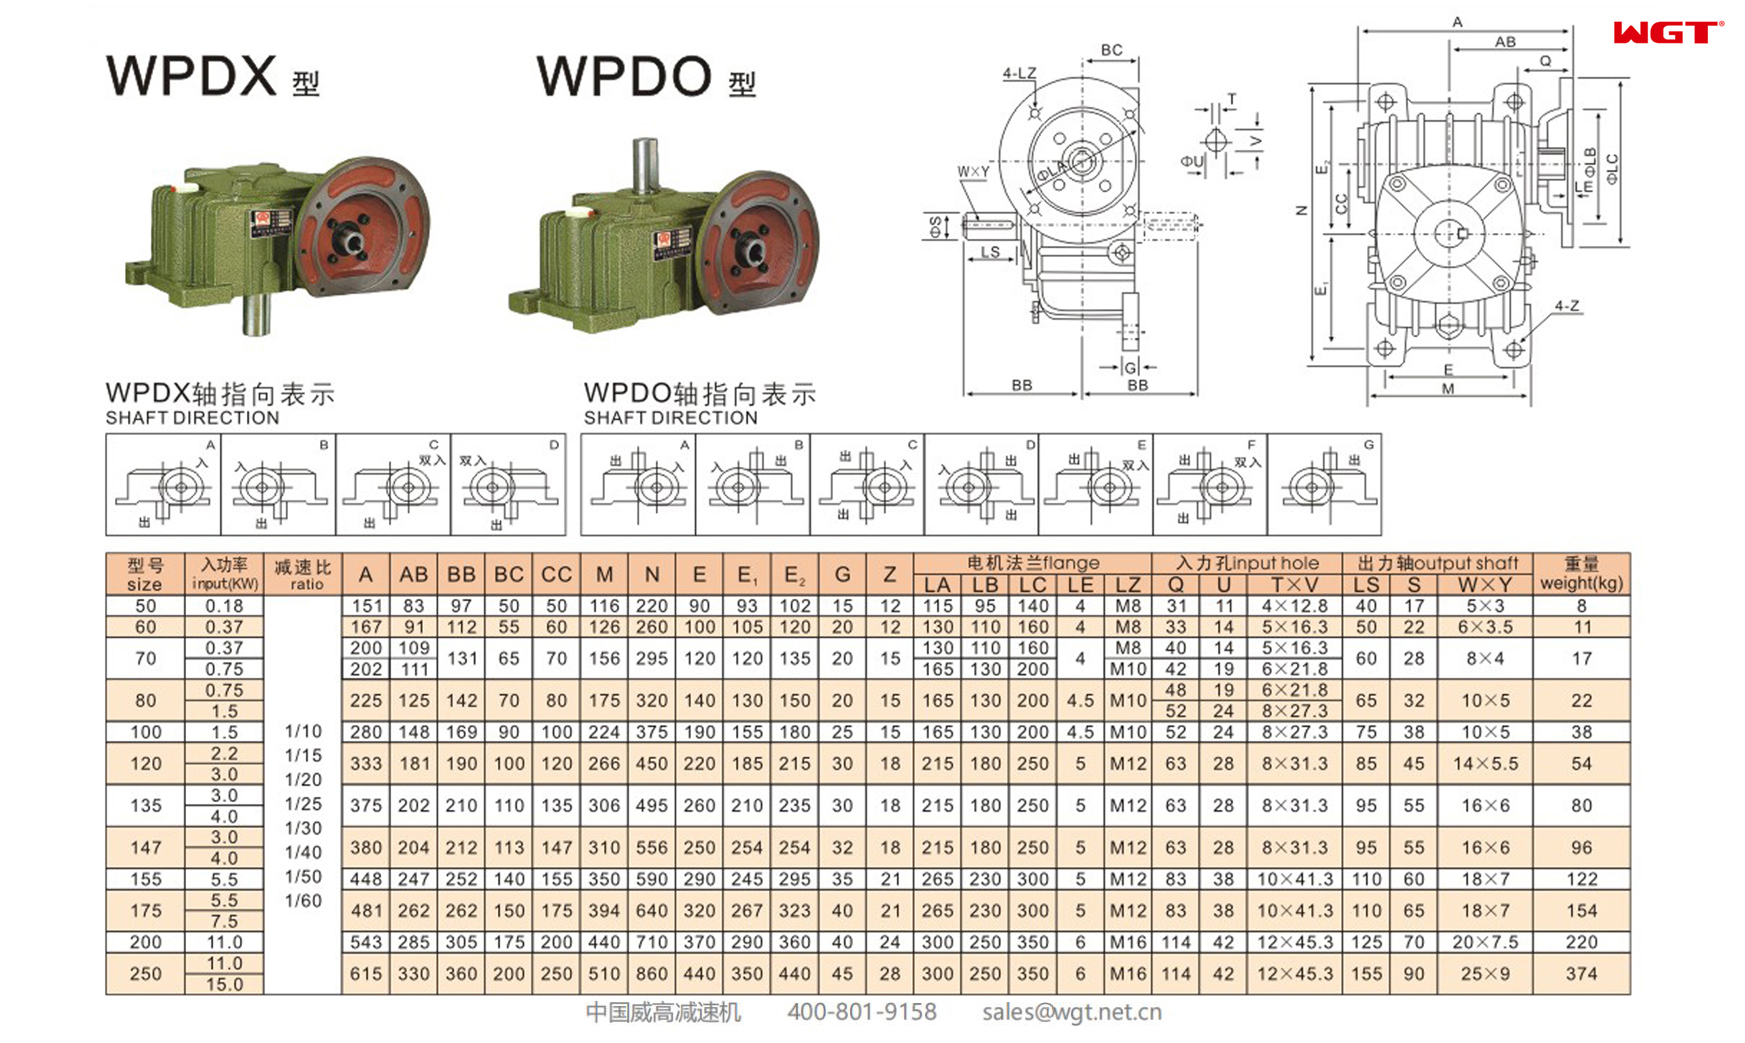 WPDX120 Червячный редуктор Односкоростной редуктор